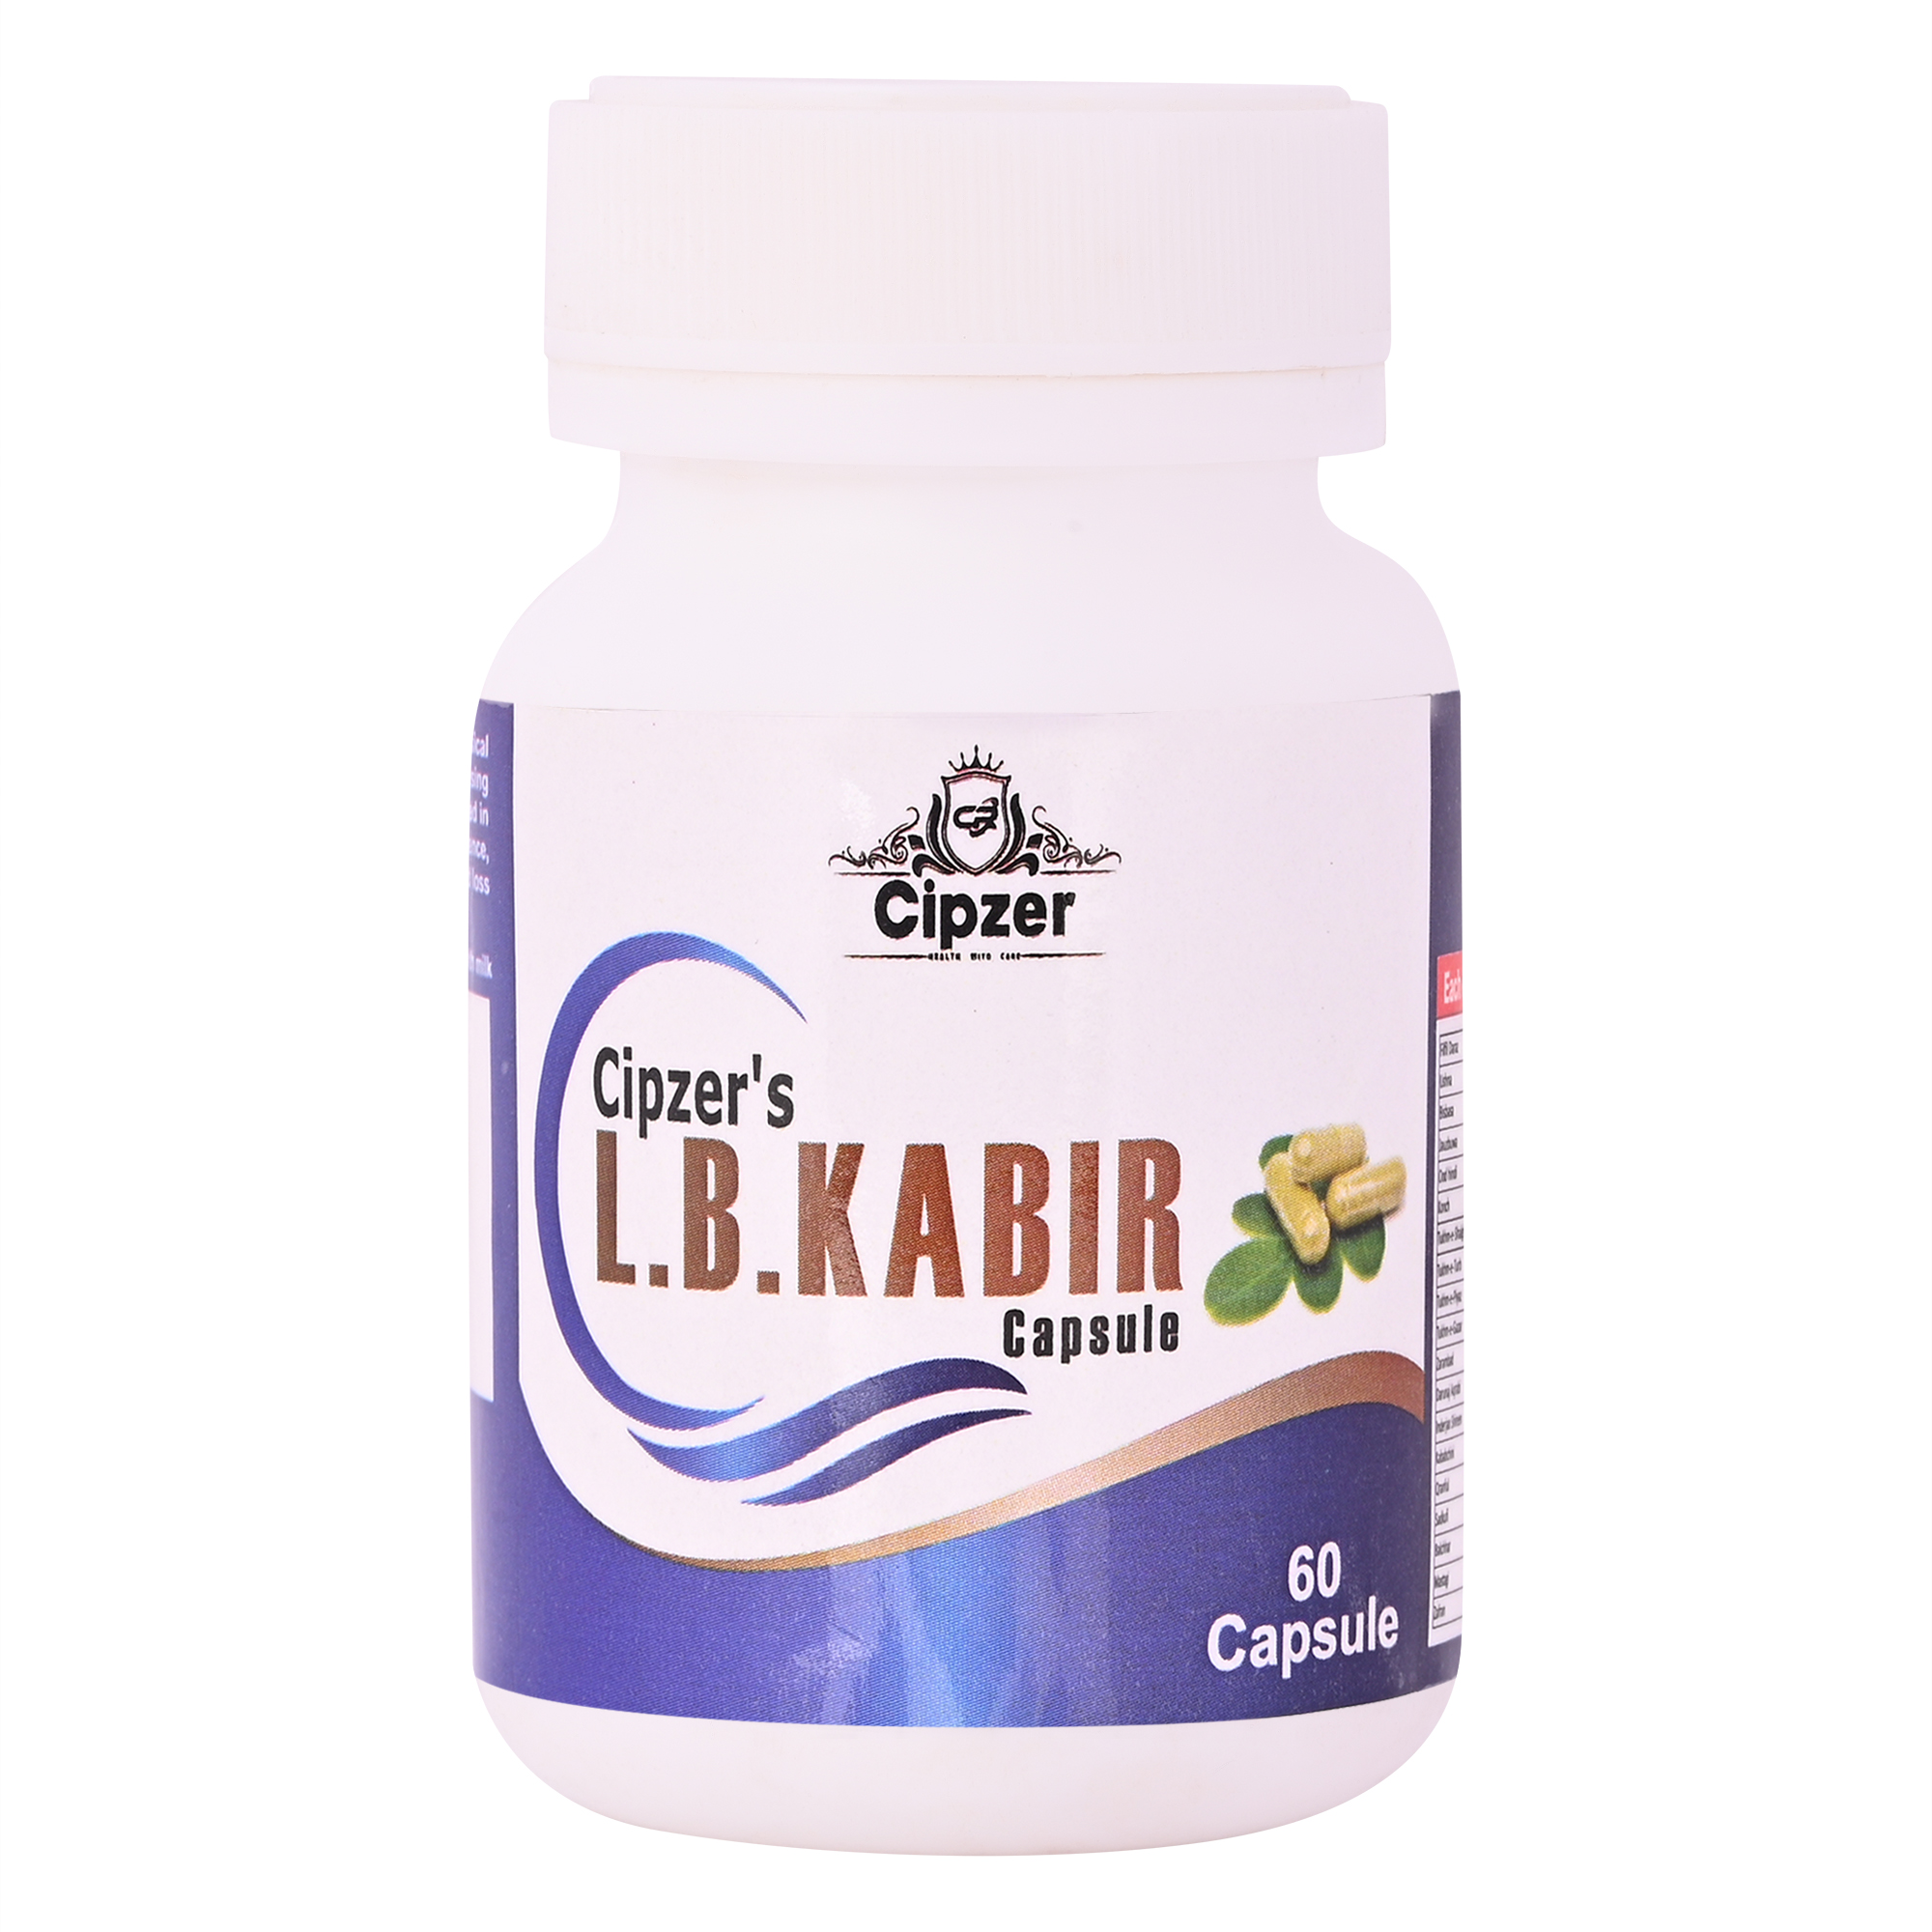 Buy Cipzer L.B.Kabir Capsule at Best Price Online